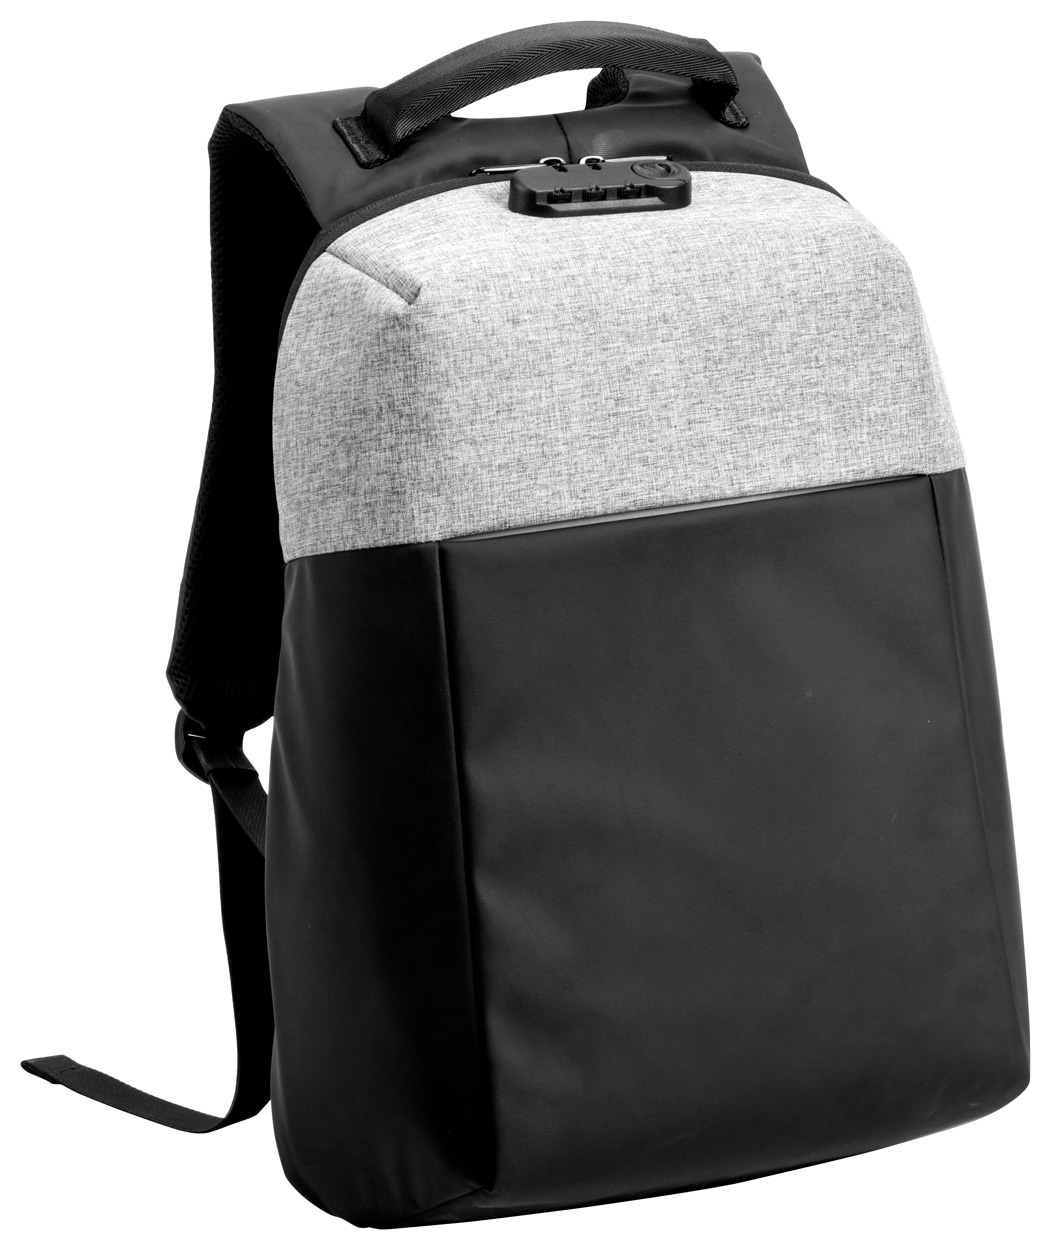 Ranley backpack Grey, Black